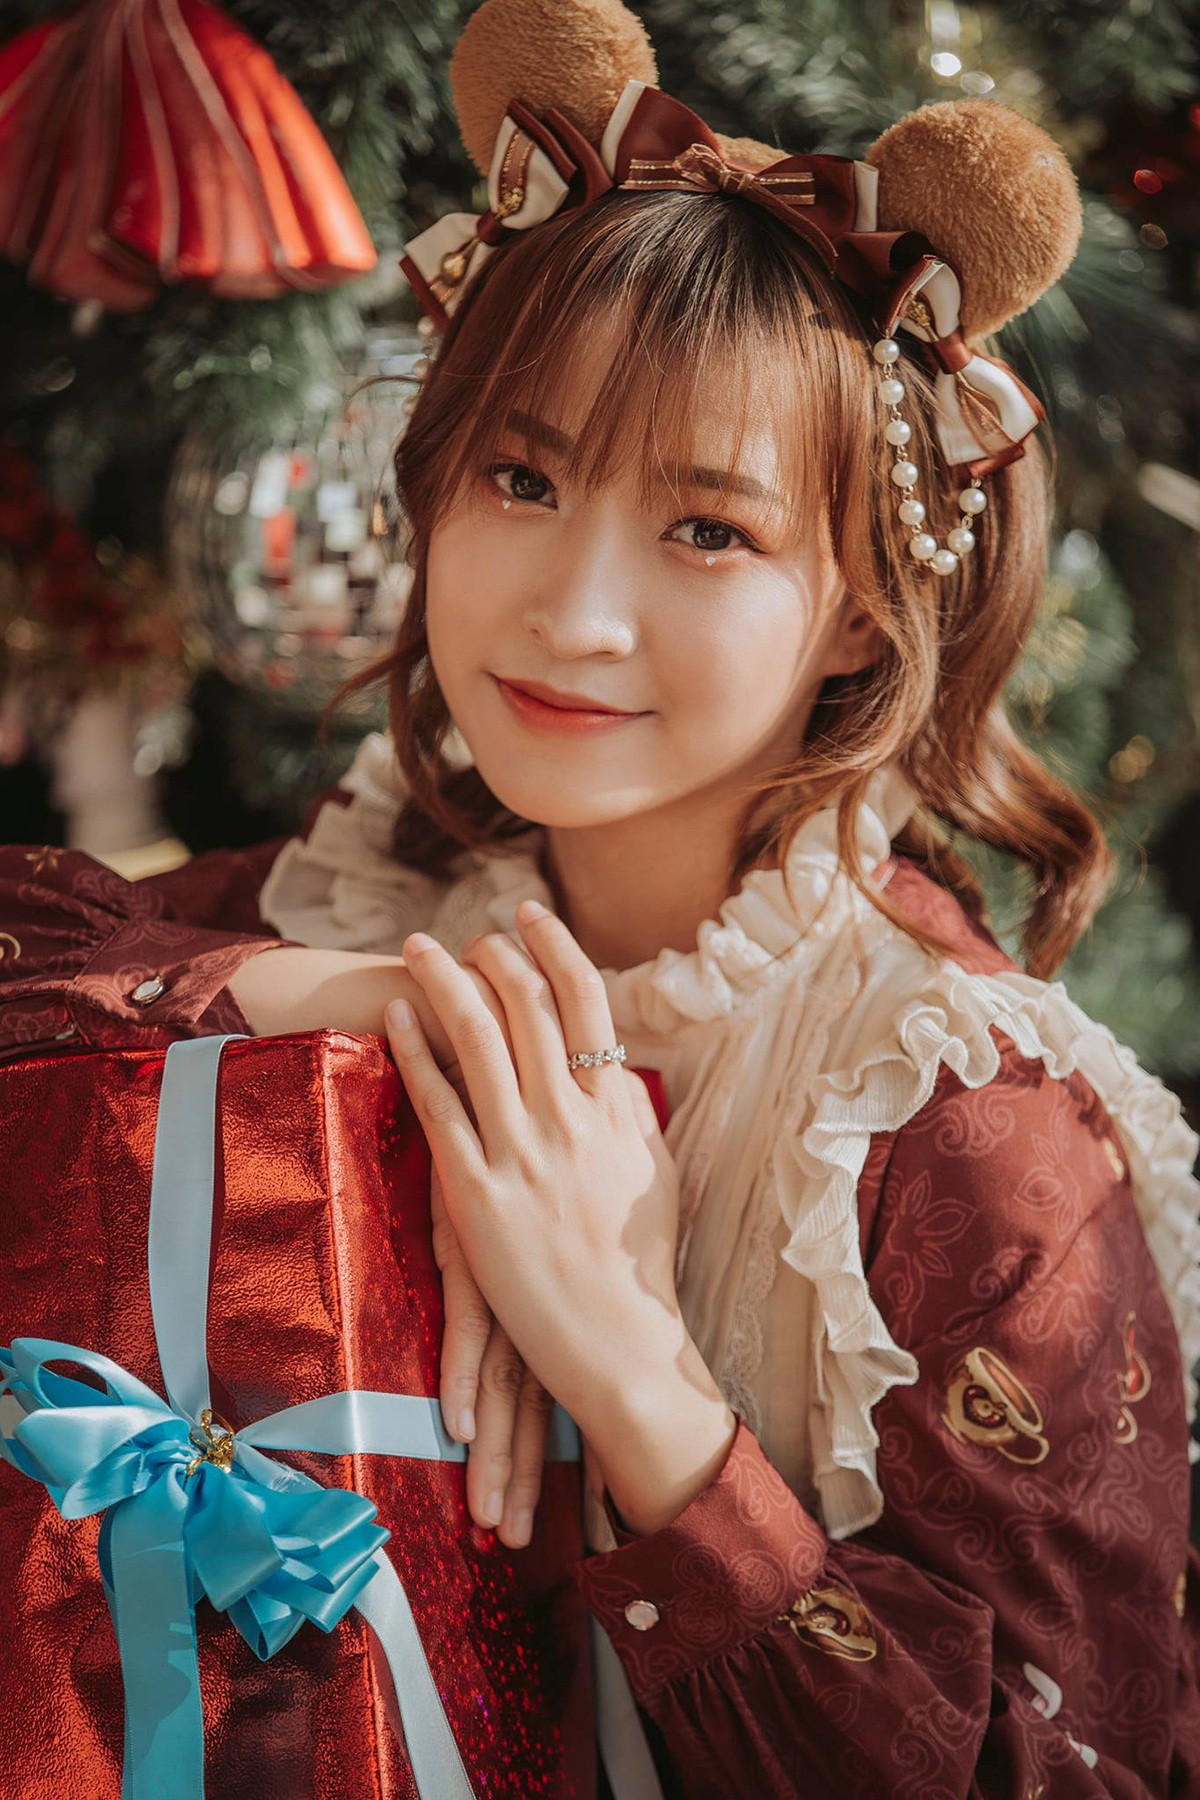 Bộ ảnh đón Giáng sinh ngọt ngào của nữ sinh xứ Nghệ - 3